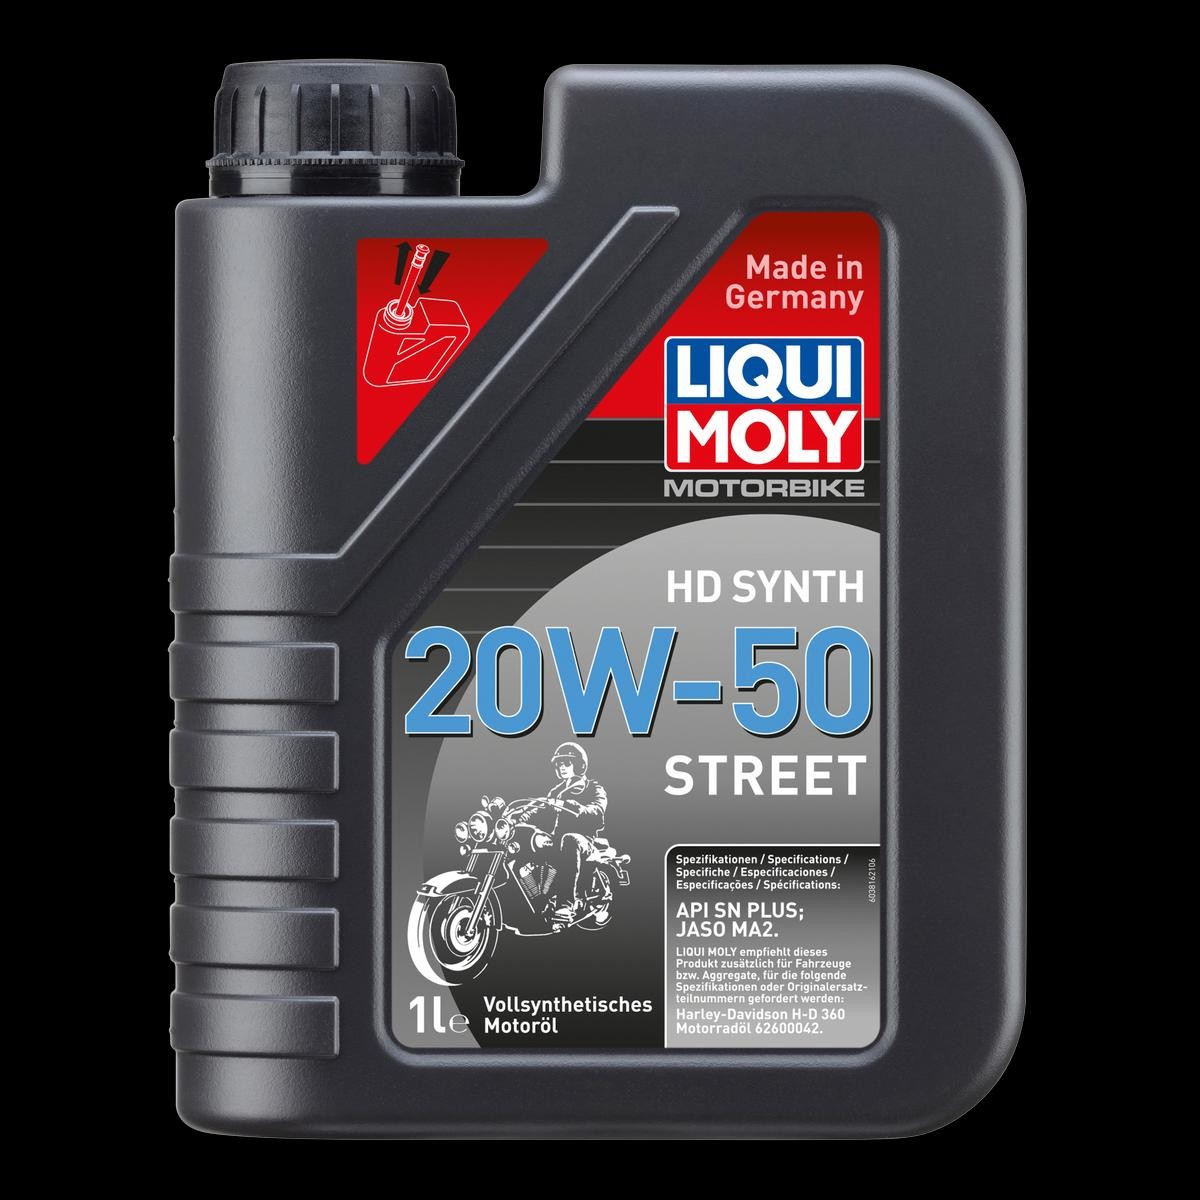 LIQUI MOLY Motorbike, HD Synth Street 3816 BUELL Motoröl Motorrad zum günstigen Preis